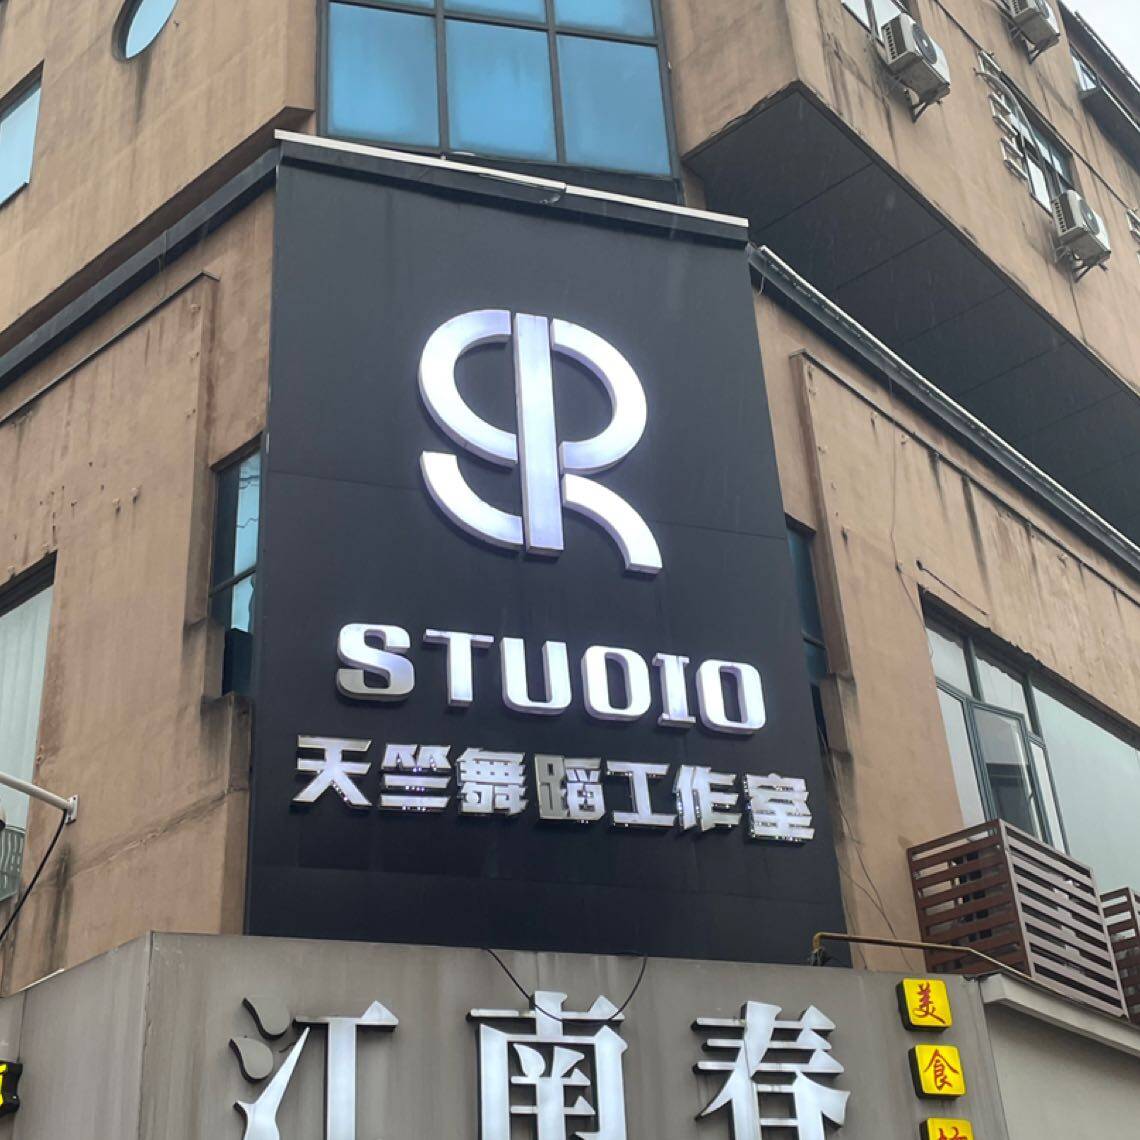 张家港市杨舍西城天竺舞蹈工作室logo